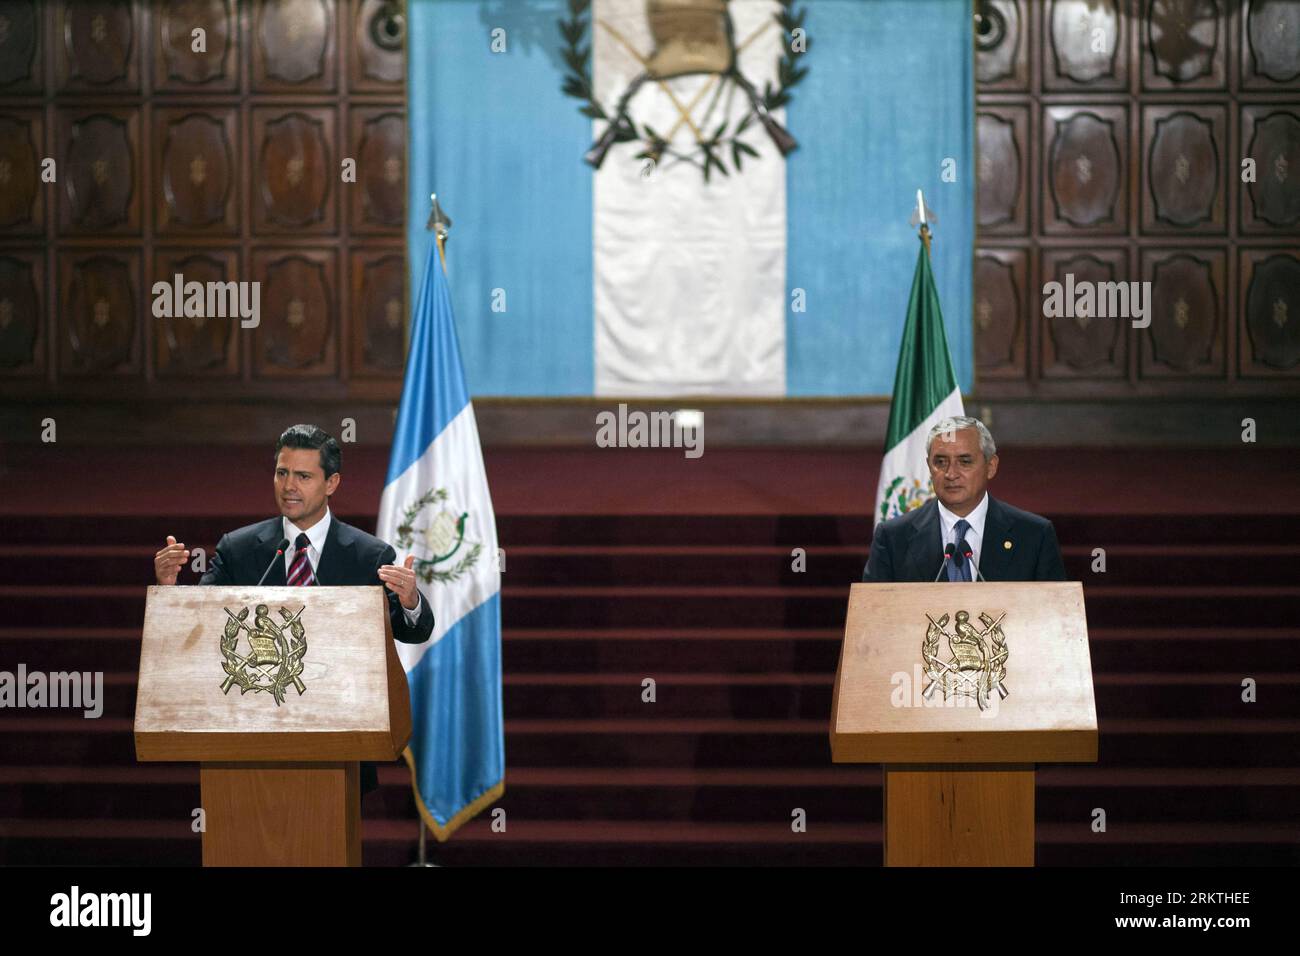 Bildnummer : 58483869 Datum : 17.09.2012 Copyright : imago/Xinhua (120918) -- GUATEMALA CITY, 18 septembre 2012 (Xinhua) -- le président mexicain élu Enrique Pena Nieto (à gauche) et le président guatémaltèque Otto Perez Molina (à droite), assistent à une conférence de presse conjointe au Palais national, à Guatelama City, capitale du Guatemala, le 17 septembre 2012. Pena Nieto a lancé lundi une tournée latino-américaine en visitant le Guatemala, la Colombie, le Brésil, le Chili, l'Argentine et le Pérou, discuter des questions liées à la sécurité, au commerce, à l'immigration et à la drogue. (Xinhua/Luis Echeverria) (da) (sp) £¨Î÷ÎÄ£©£¨¹ú¼Ê×¨Ïß£©GUATEMALA-GUATEMALA CITY-MEXICO- Banque D'Images